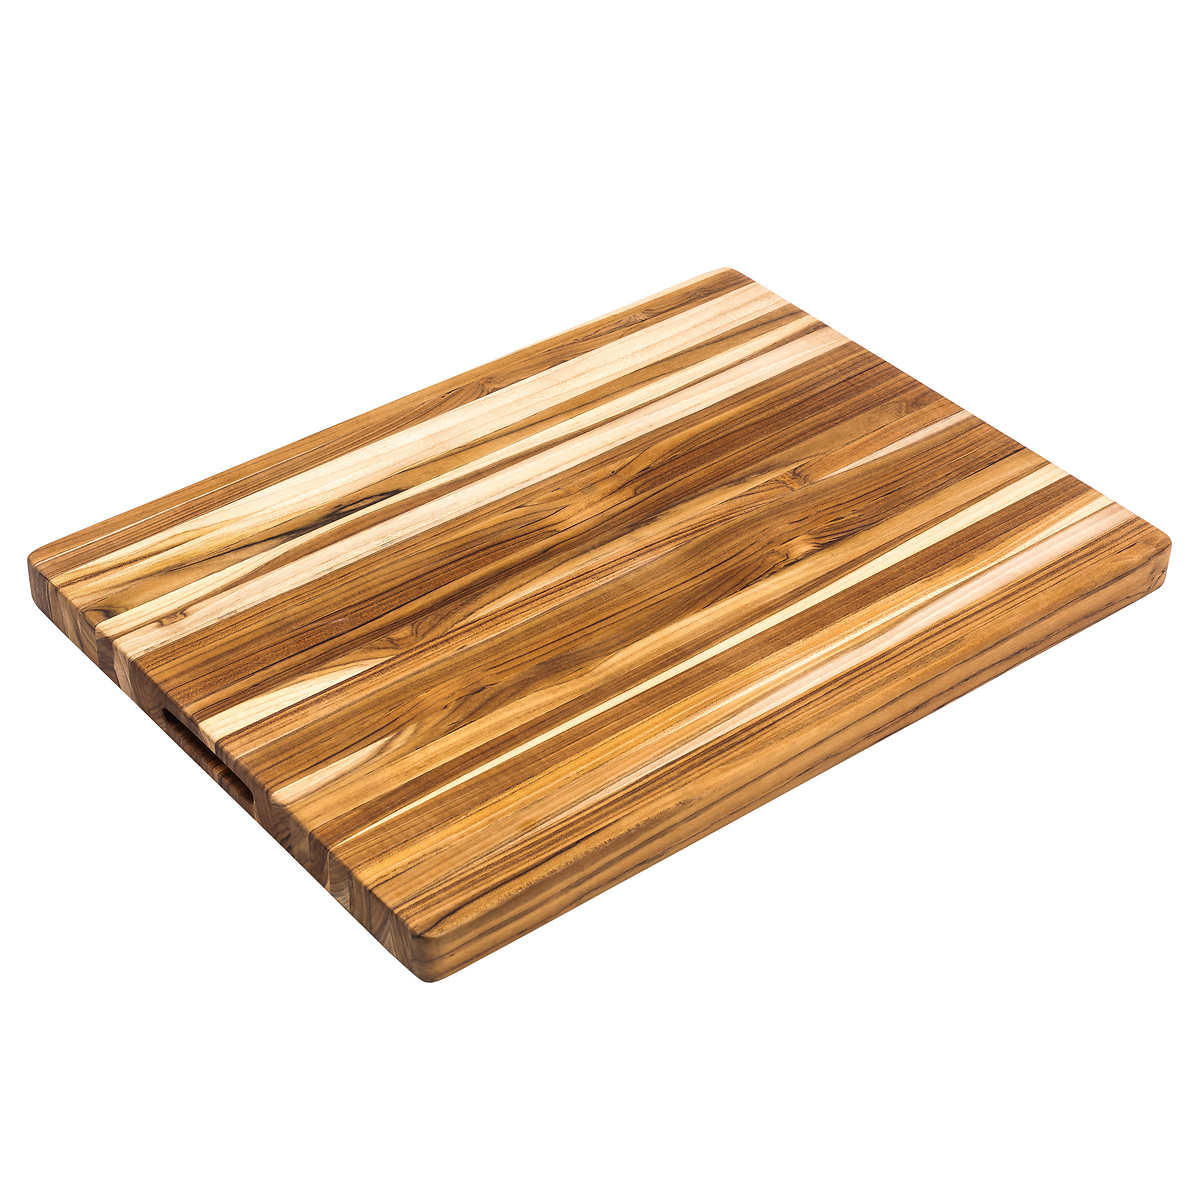 Broil King Wood Fiber Cutting Board